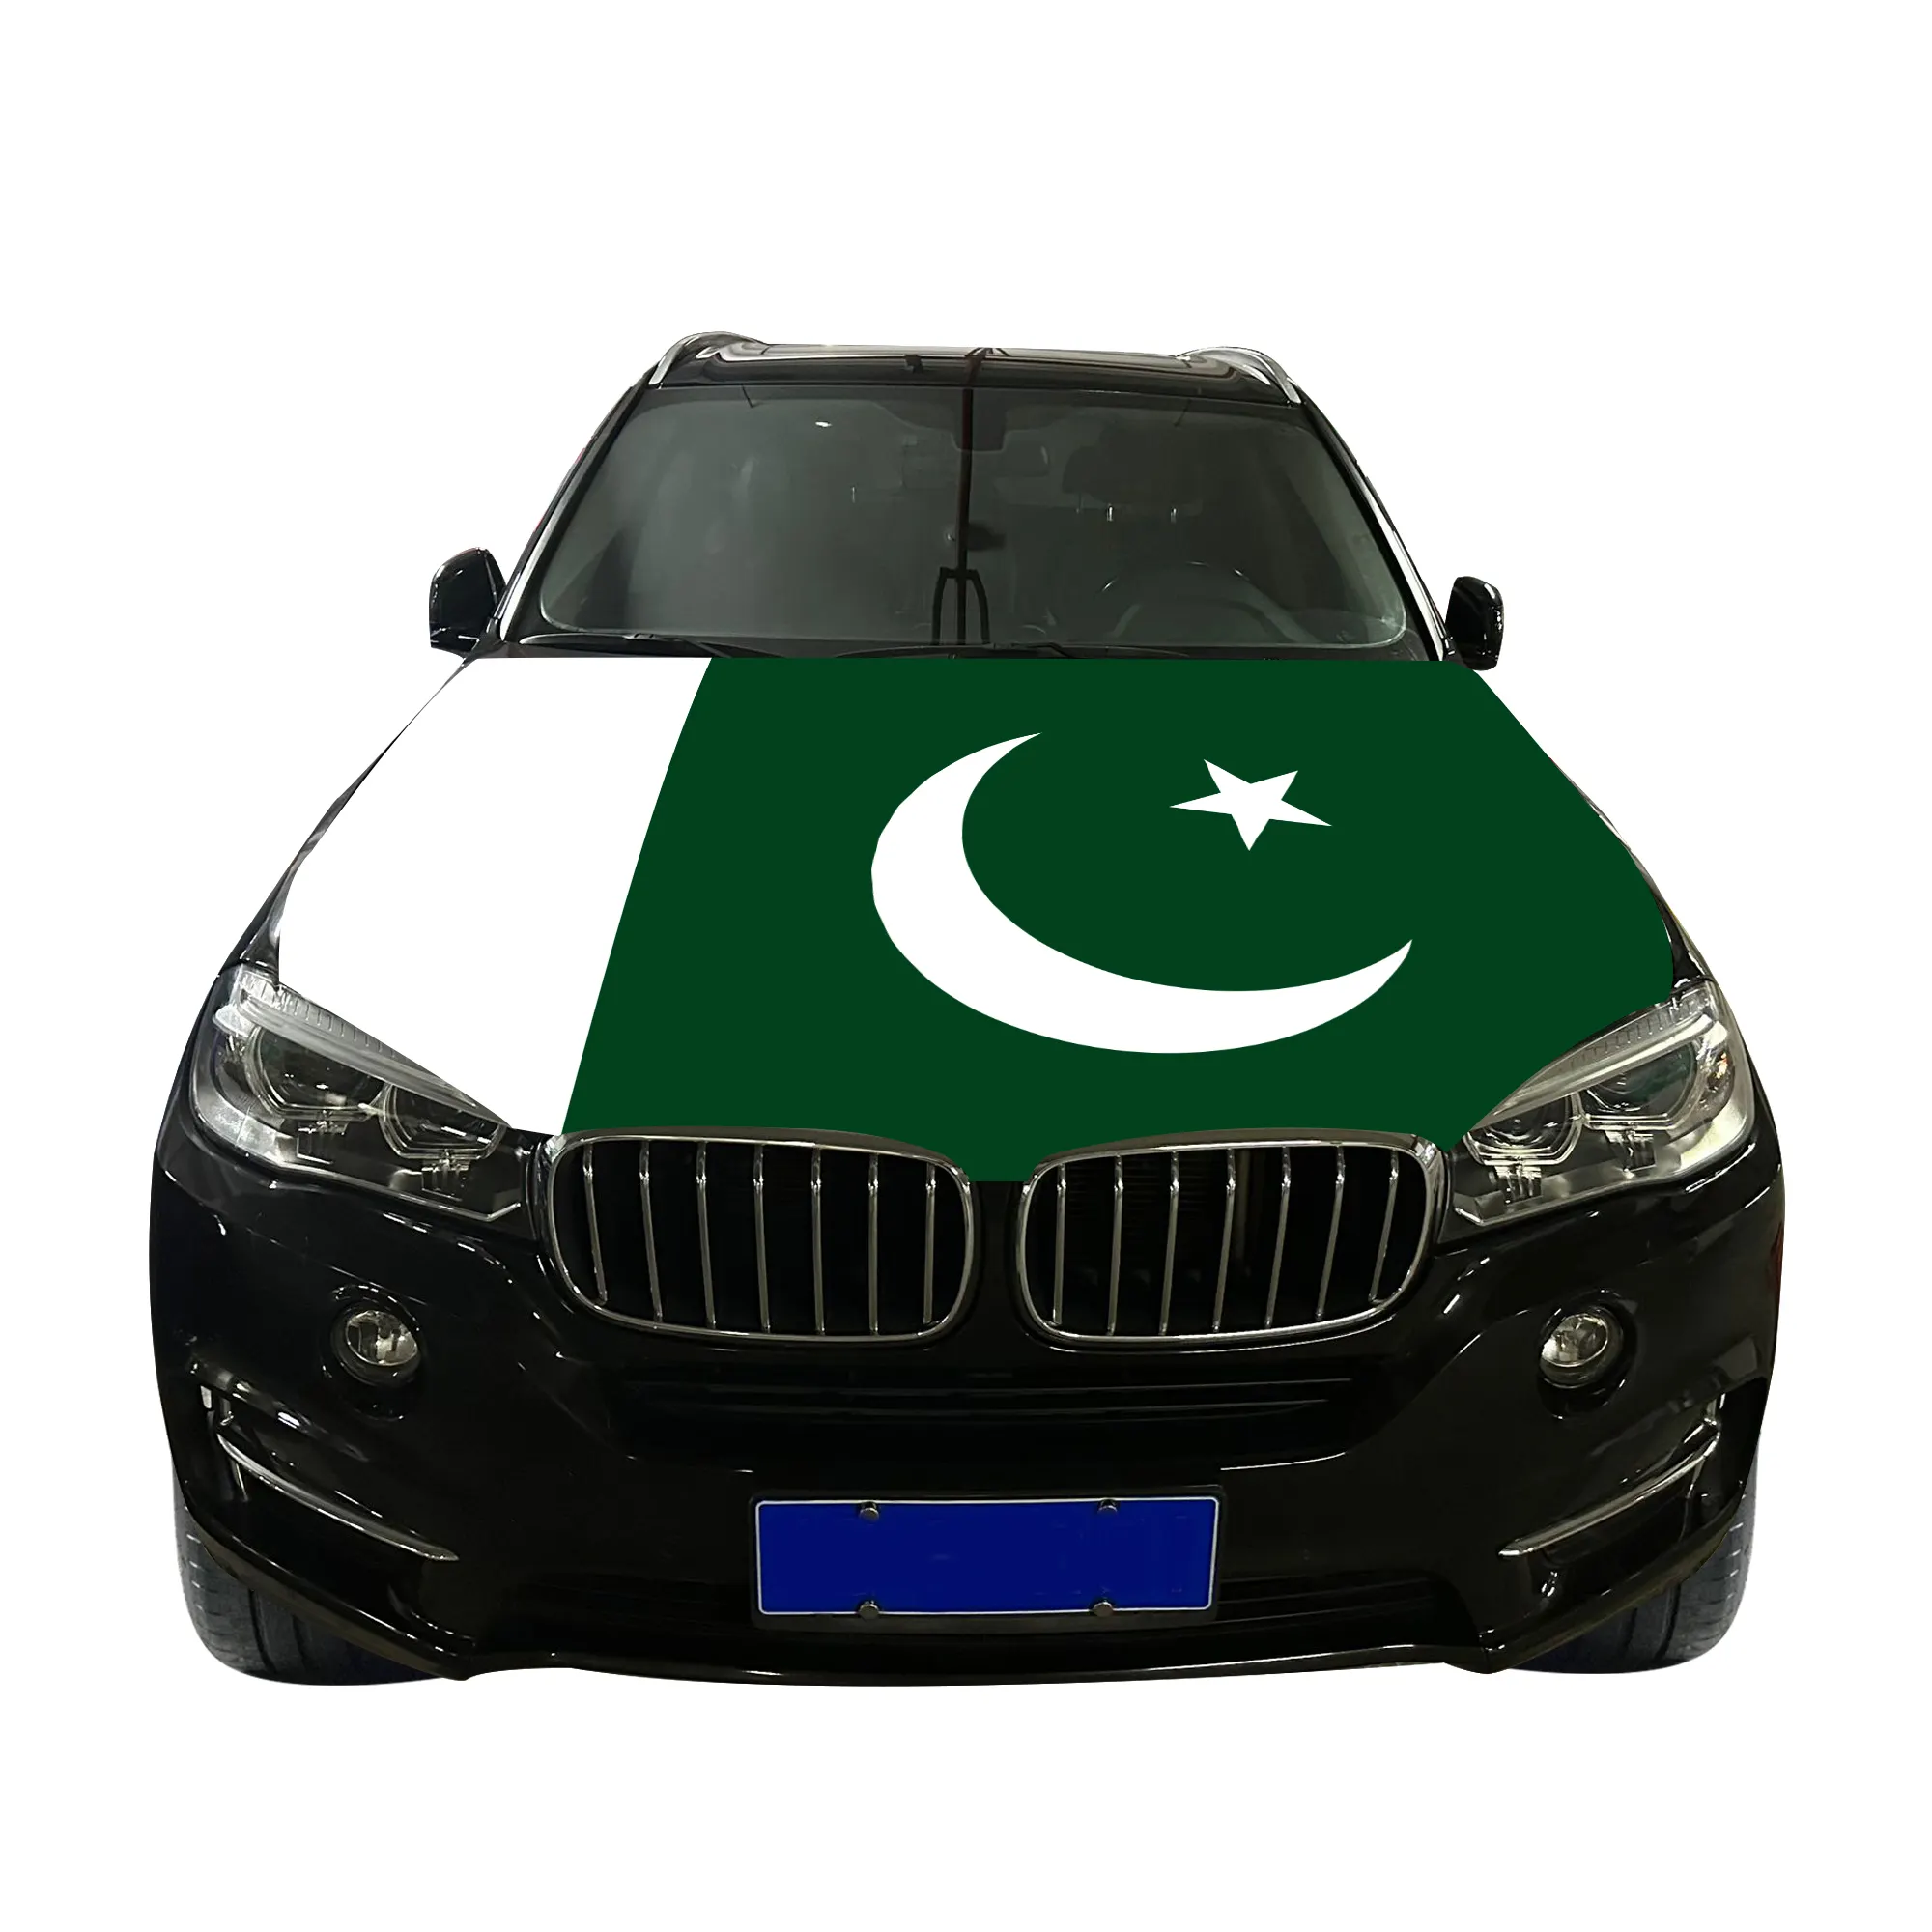 Örme Polyester yüksek kaliteli Pakistan araba kaput kapağı bayrak ülkeleri araba kaput kapağı bayrağı